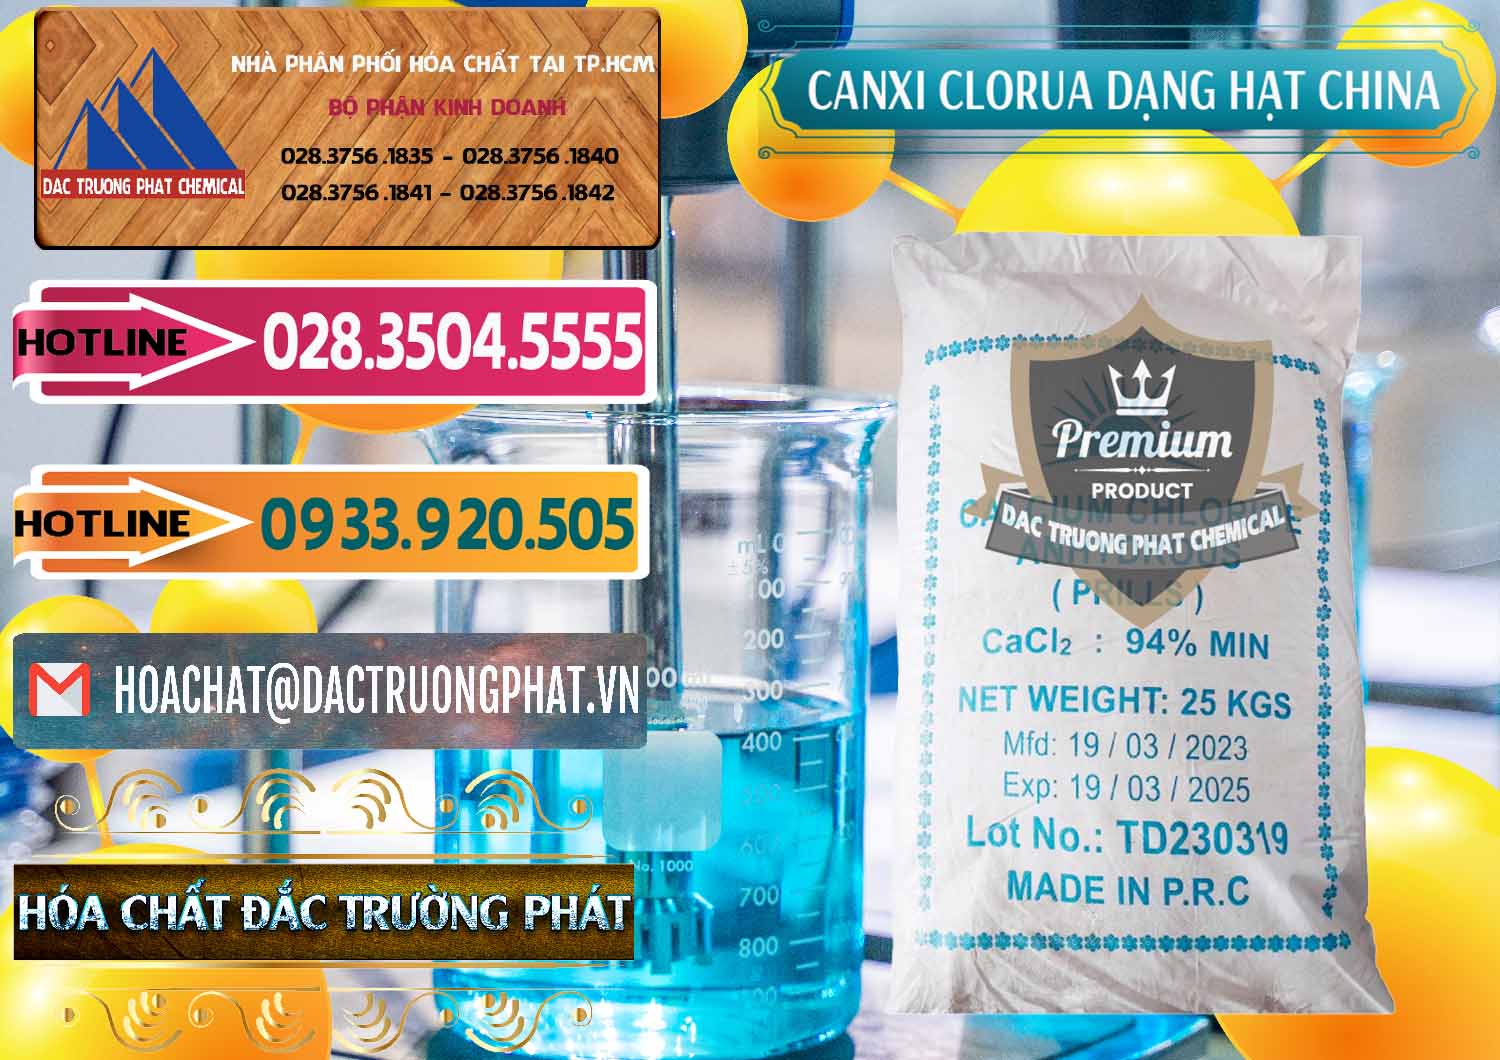 Cty cung cấp và bán CaCl2 – Canxi Clorua 94% Dạng Hạt Trung Quốc China - 0373 - Công ty cung cấp - kinh doanh hóa chất tại TP.HCM - dactruongphat.vn